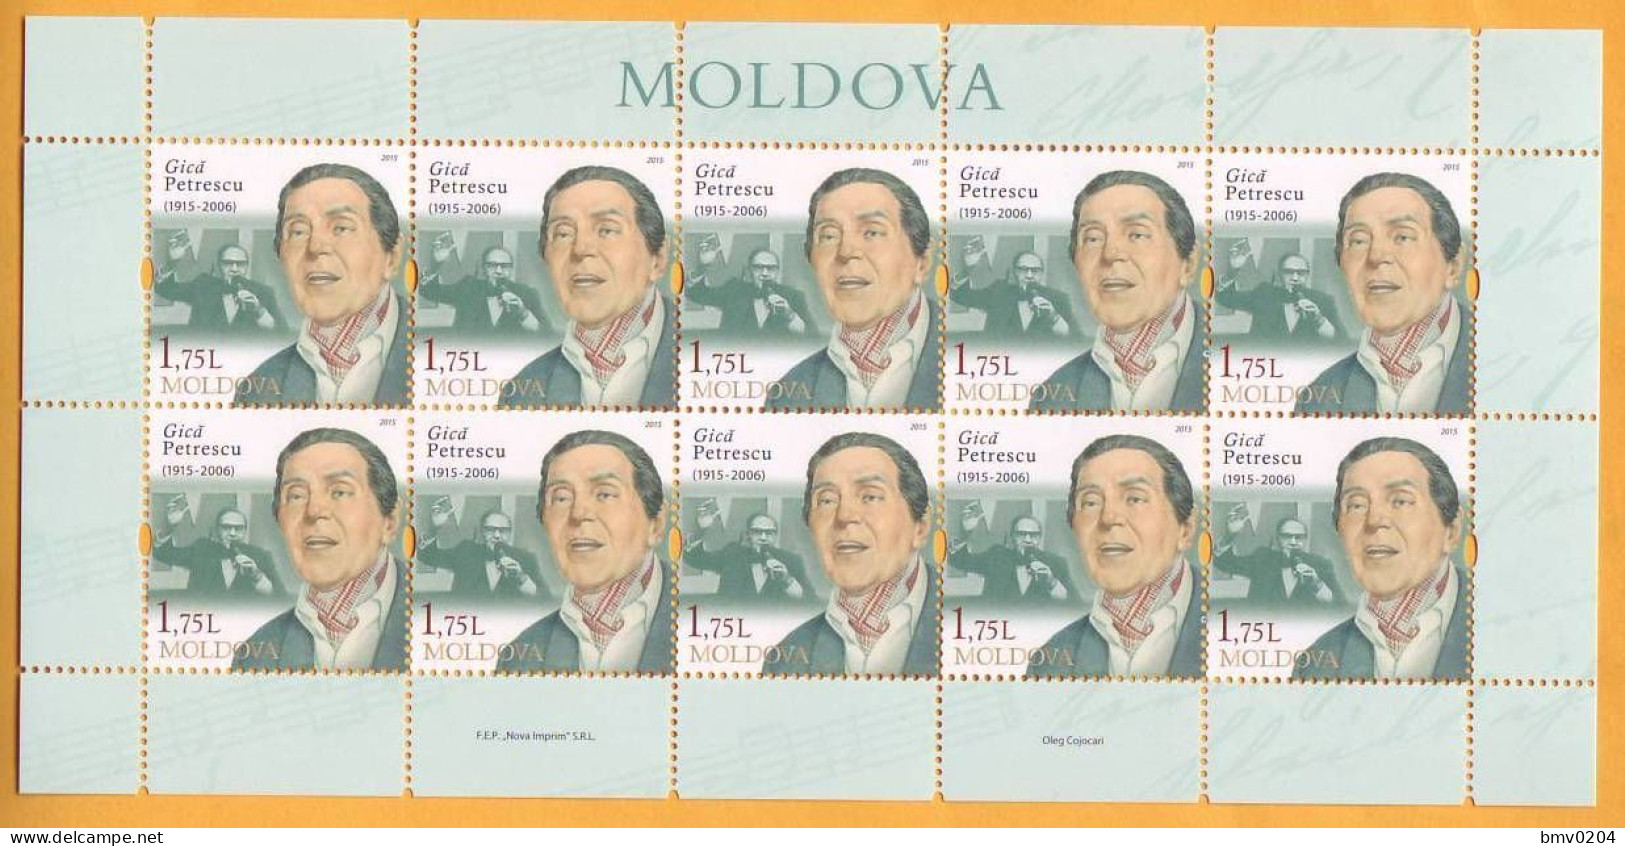 2015 Moldova Moldavie Moldau Sheet Romania  Gicu Petrescu  Mint 1.75 - Moldova